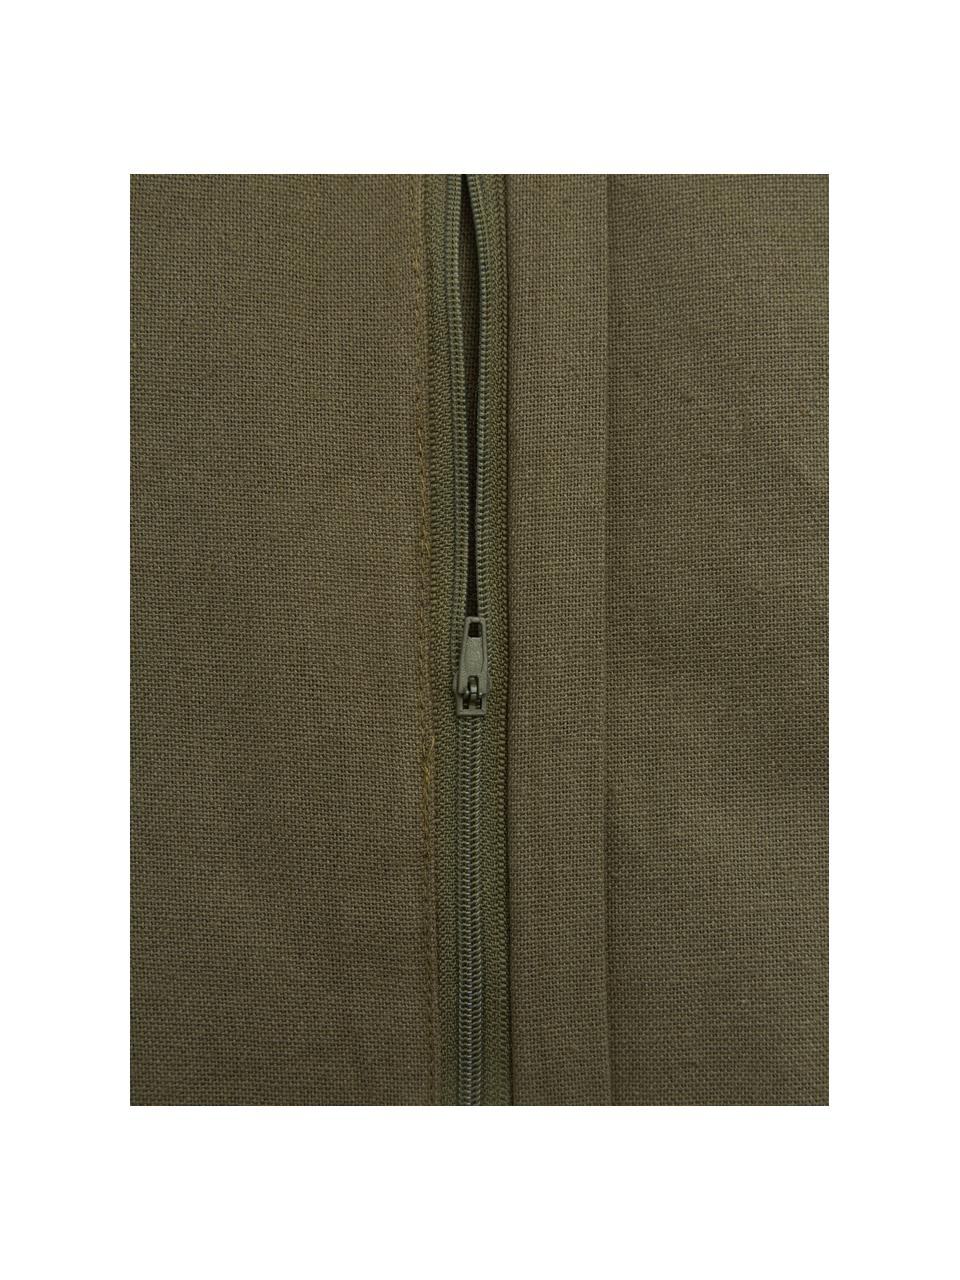 Coussins en coton plissé avec une surface à volants vert olive, avec coutil, 100 % coton, Vert olive, larg. 45 x long. 45 cm